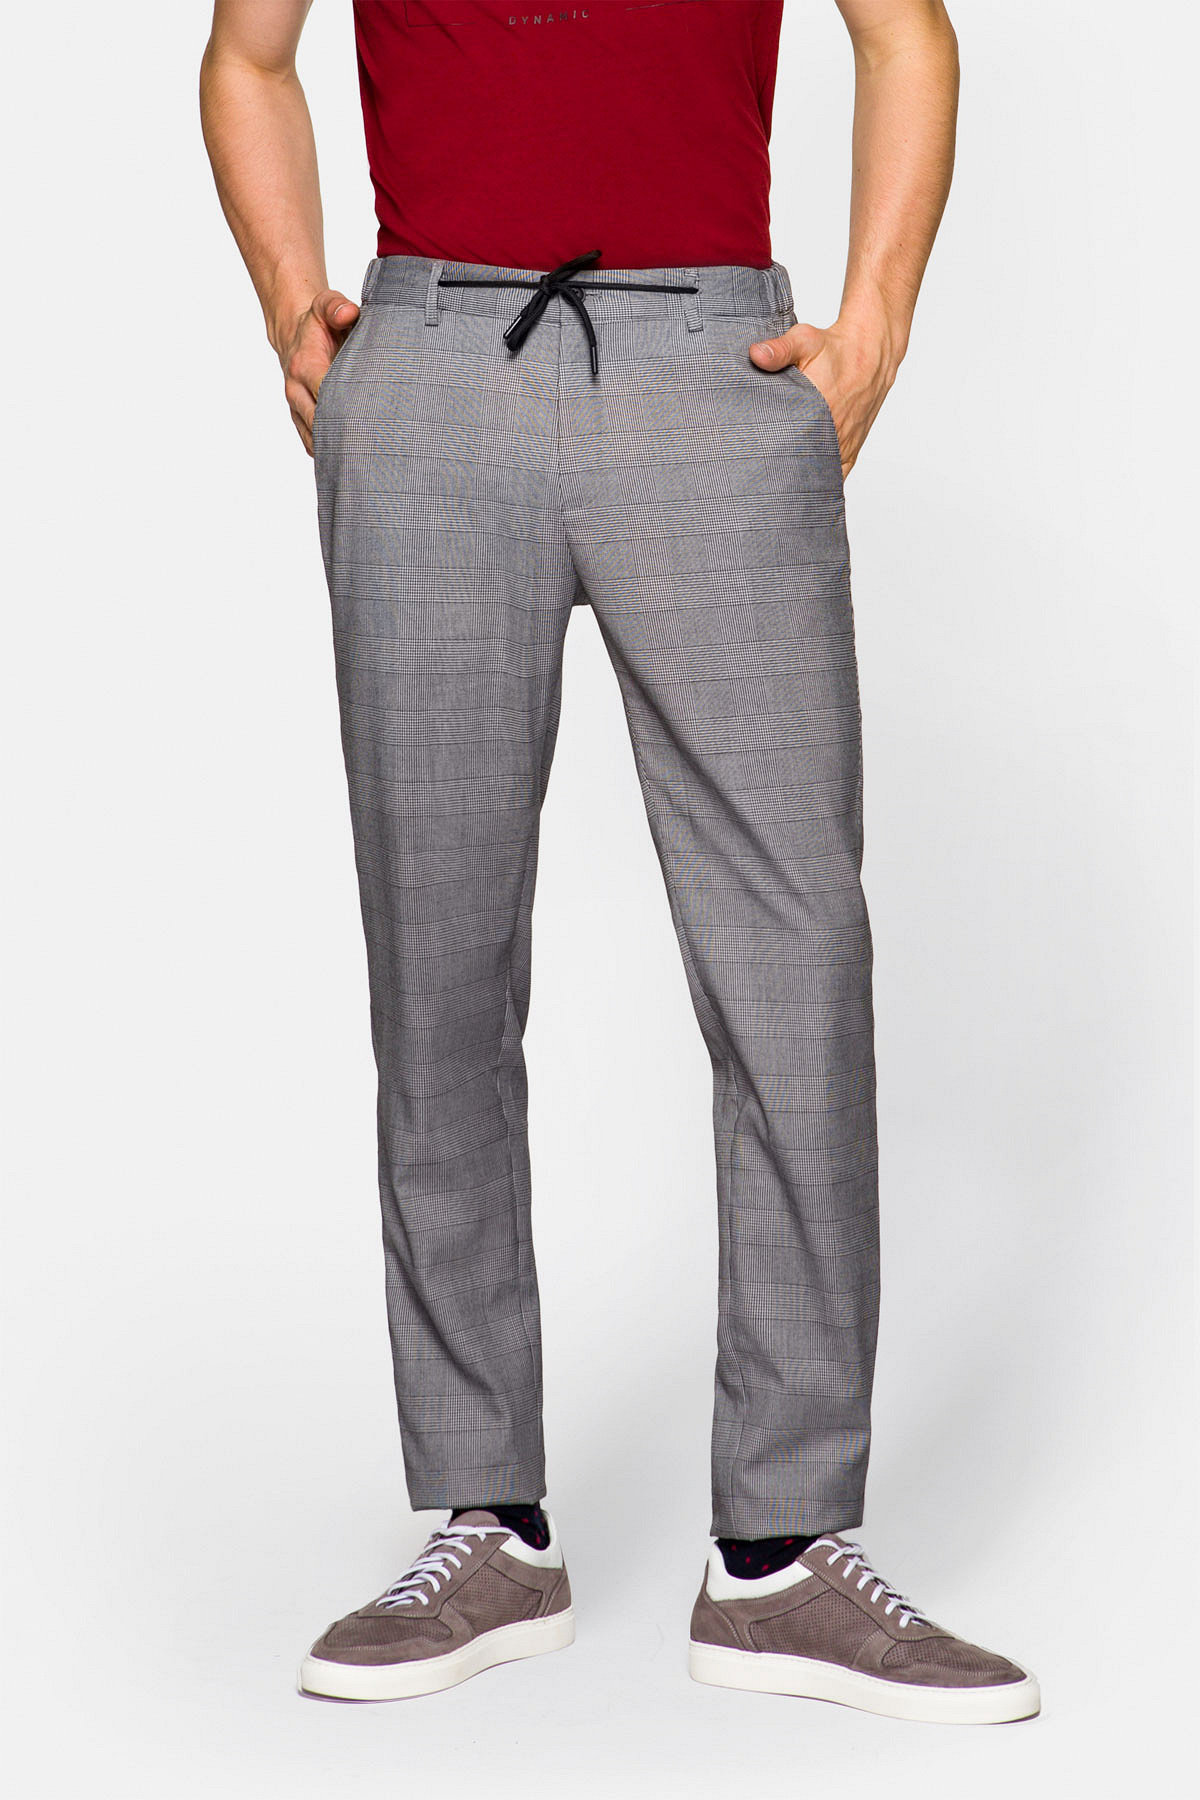 Lancerto - Spodnie ze sznurkiem szare w kratę winston